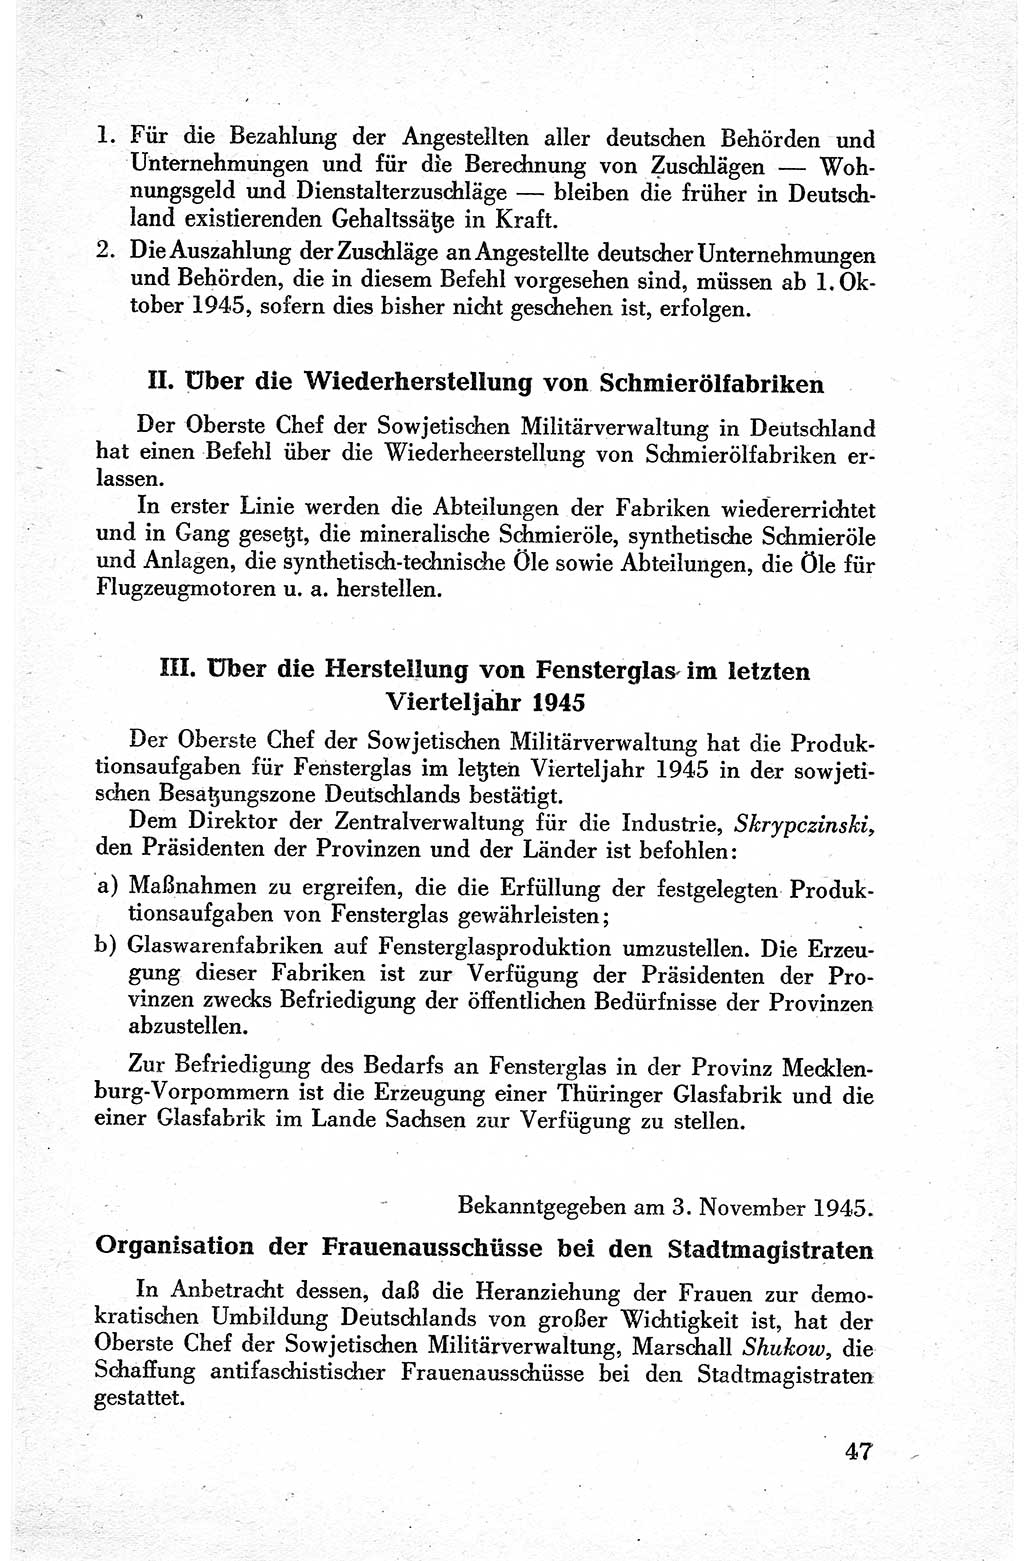 Befehle des Obersten Chefs der Sowjetischen Miltärverwaltung (SMV) in Deutschland - Aus dem Stab der Sowjetischen Militärverwaltung in Deutschland 1945, Seite 47 (Bef. SMV Dtl. 1945, S. 47)